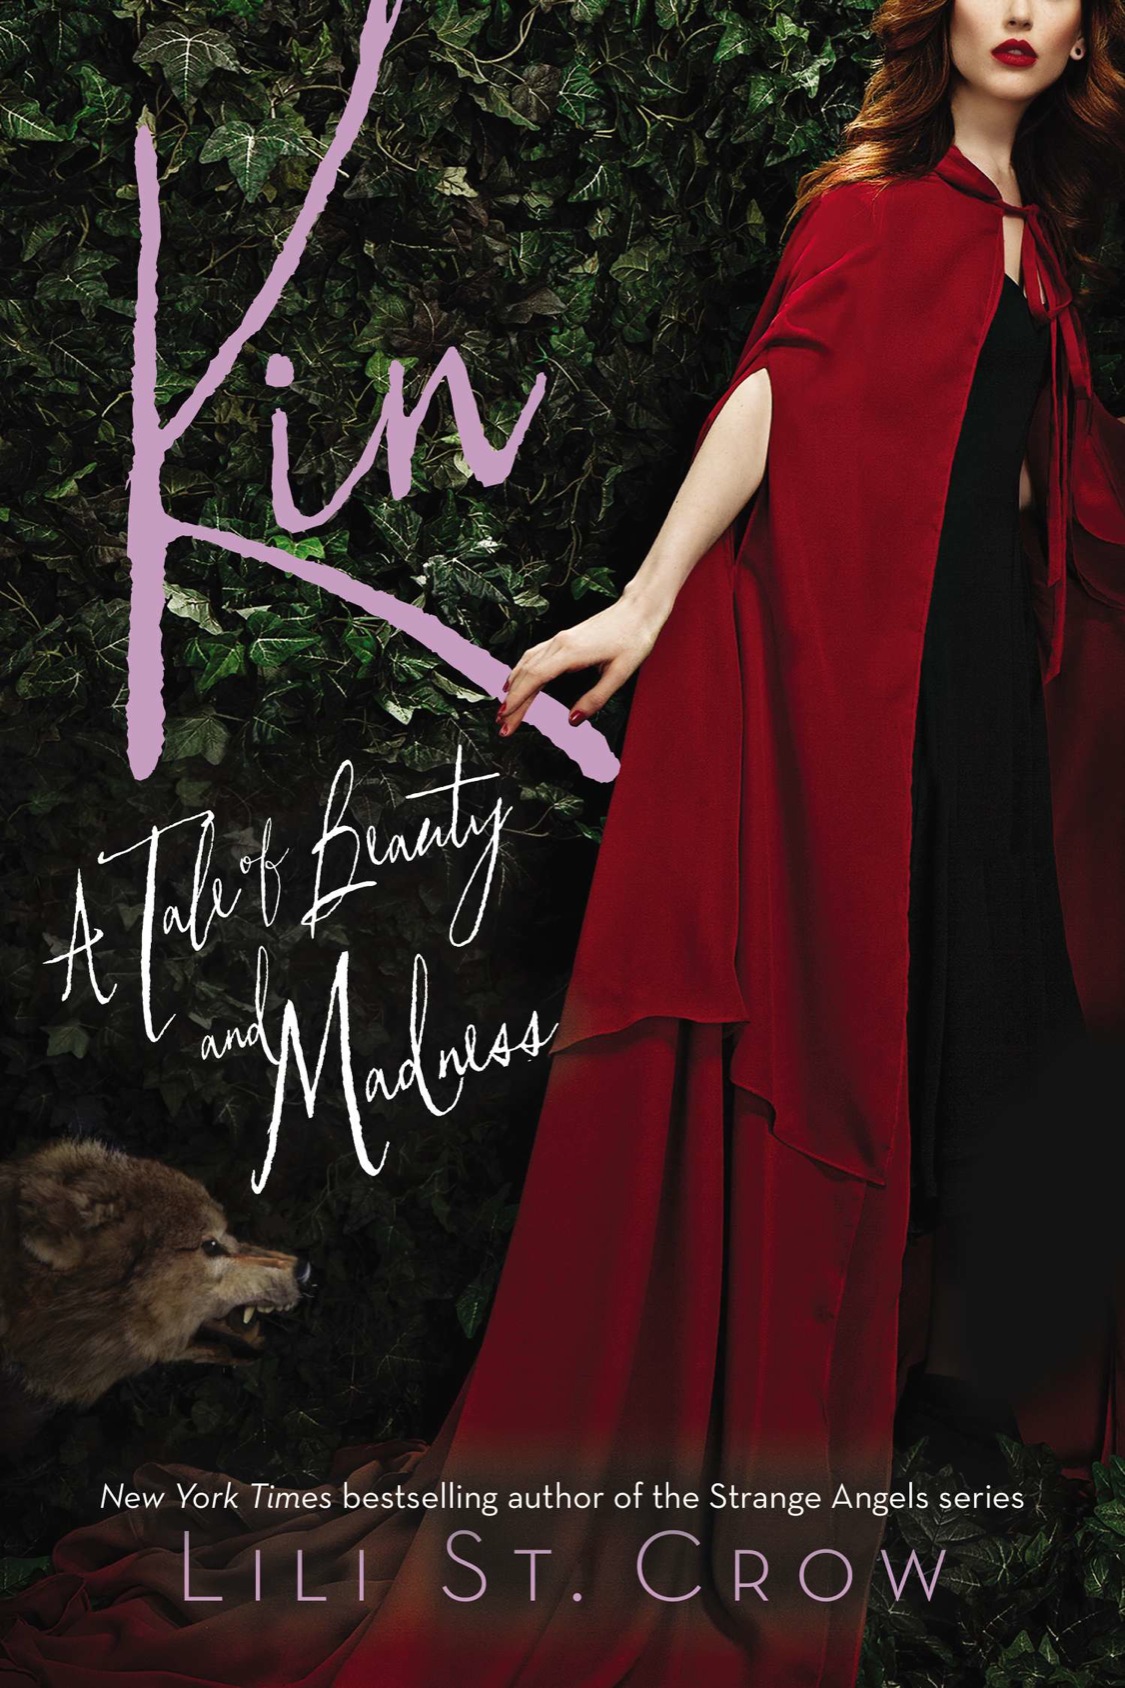 Kin (2015) by Lili St. Crow